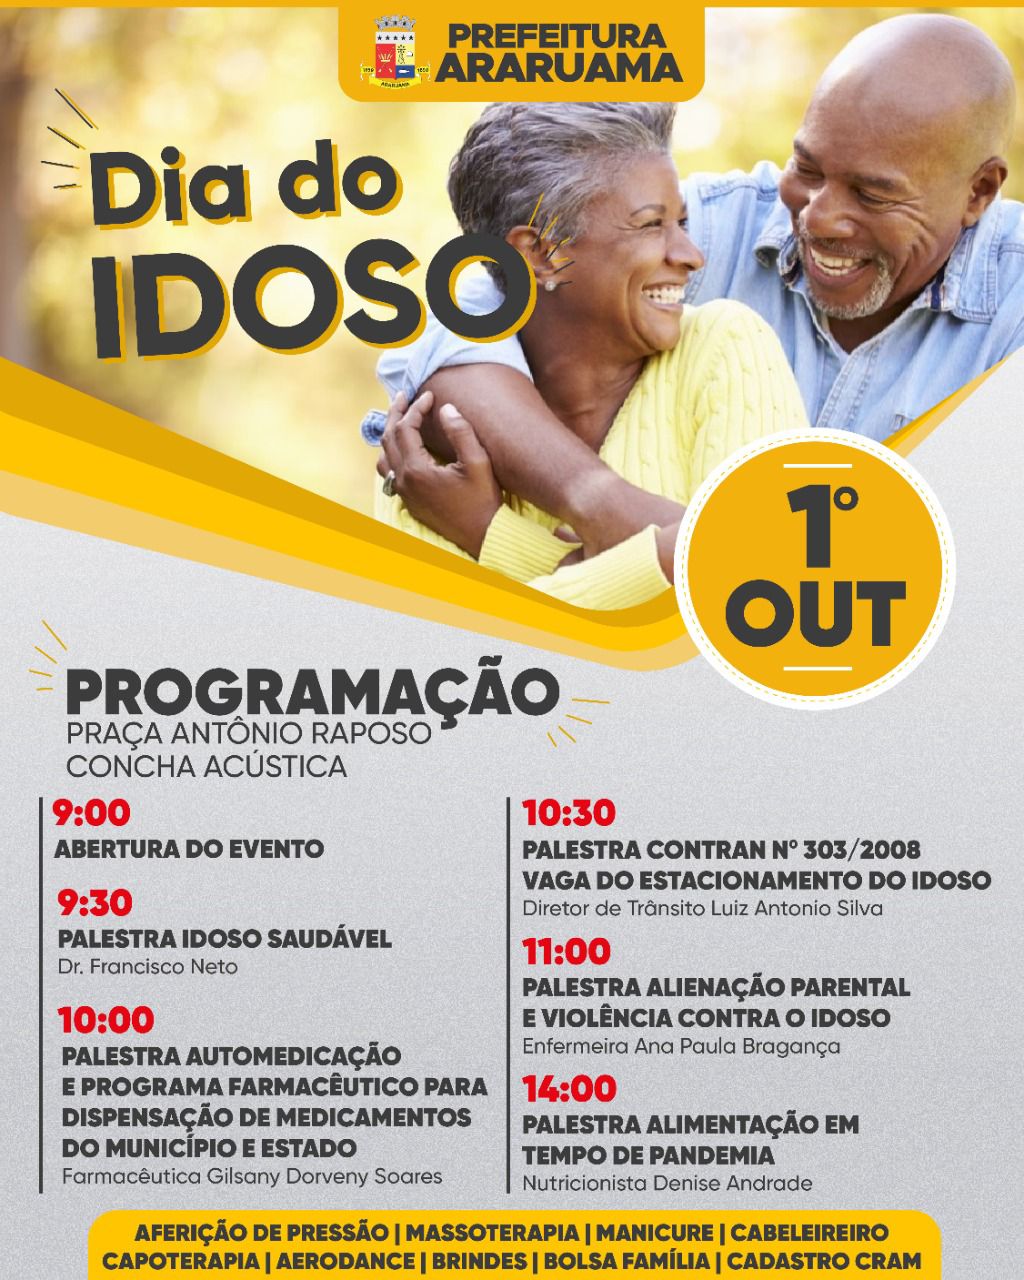 Prefeitura de Araruama vai realizar programação especial para comemorar o “Dia do Idoso”